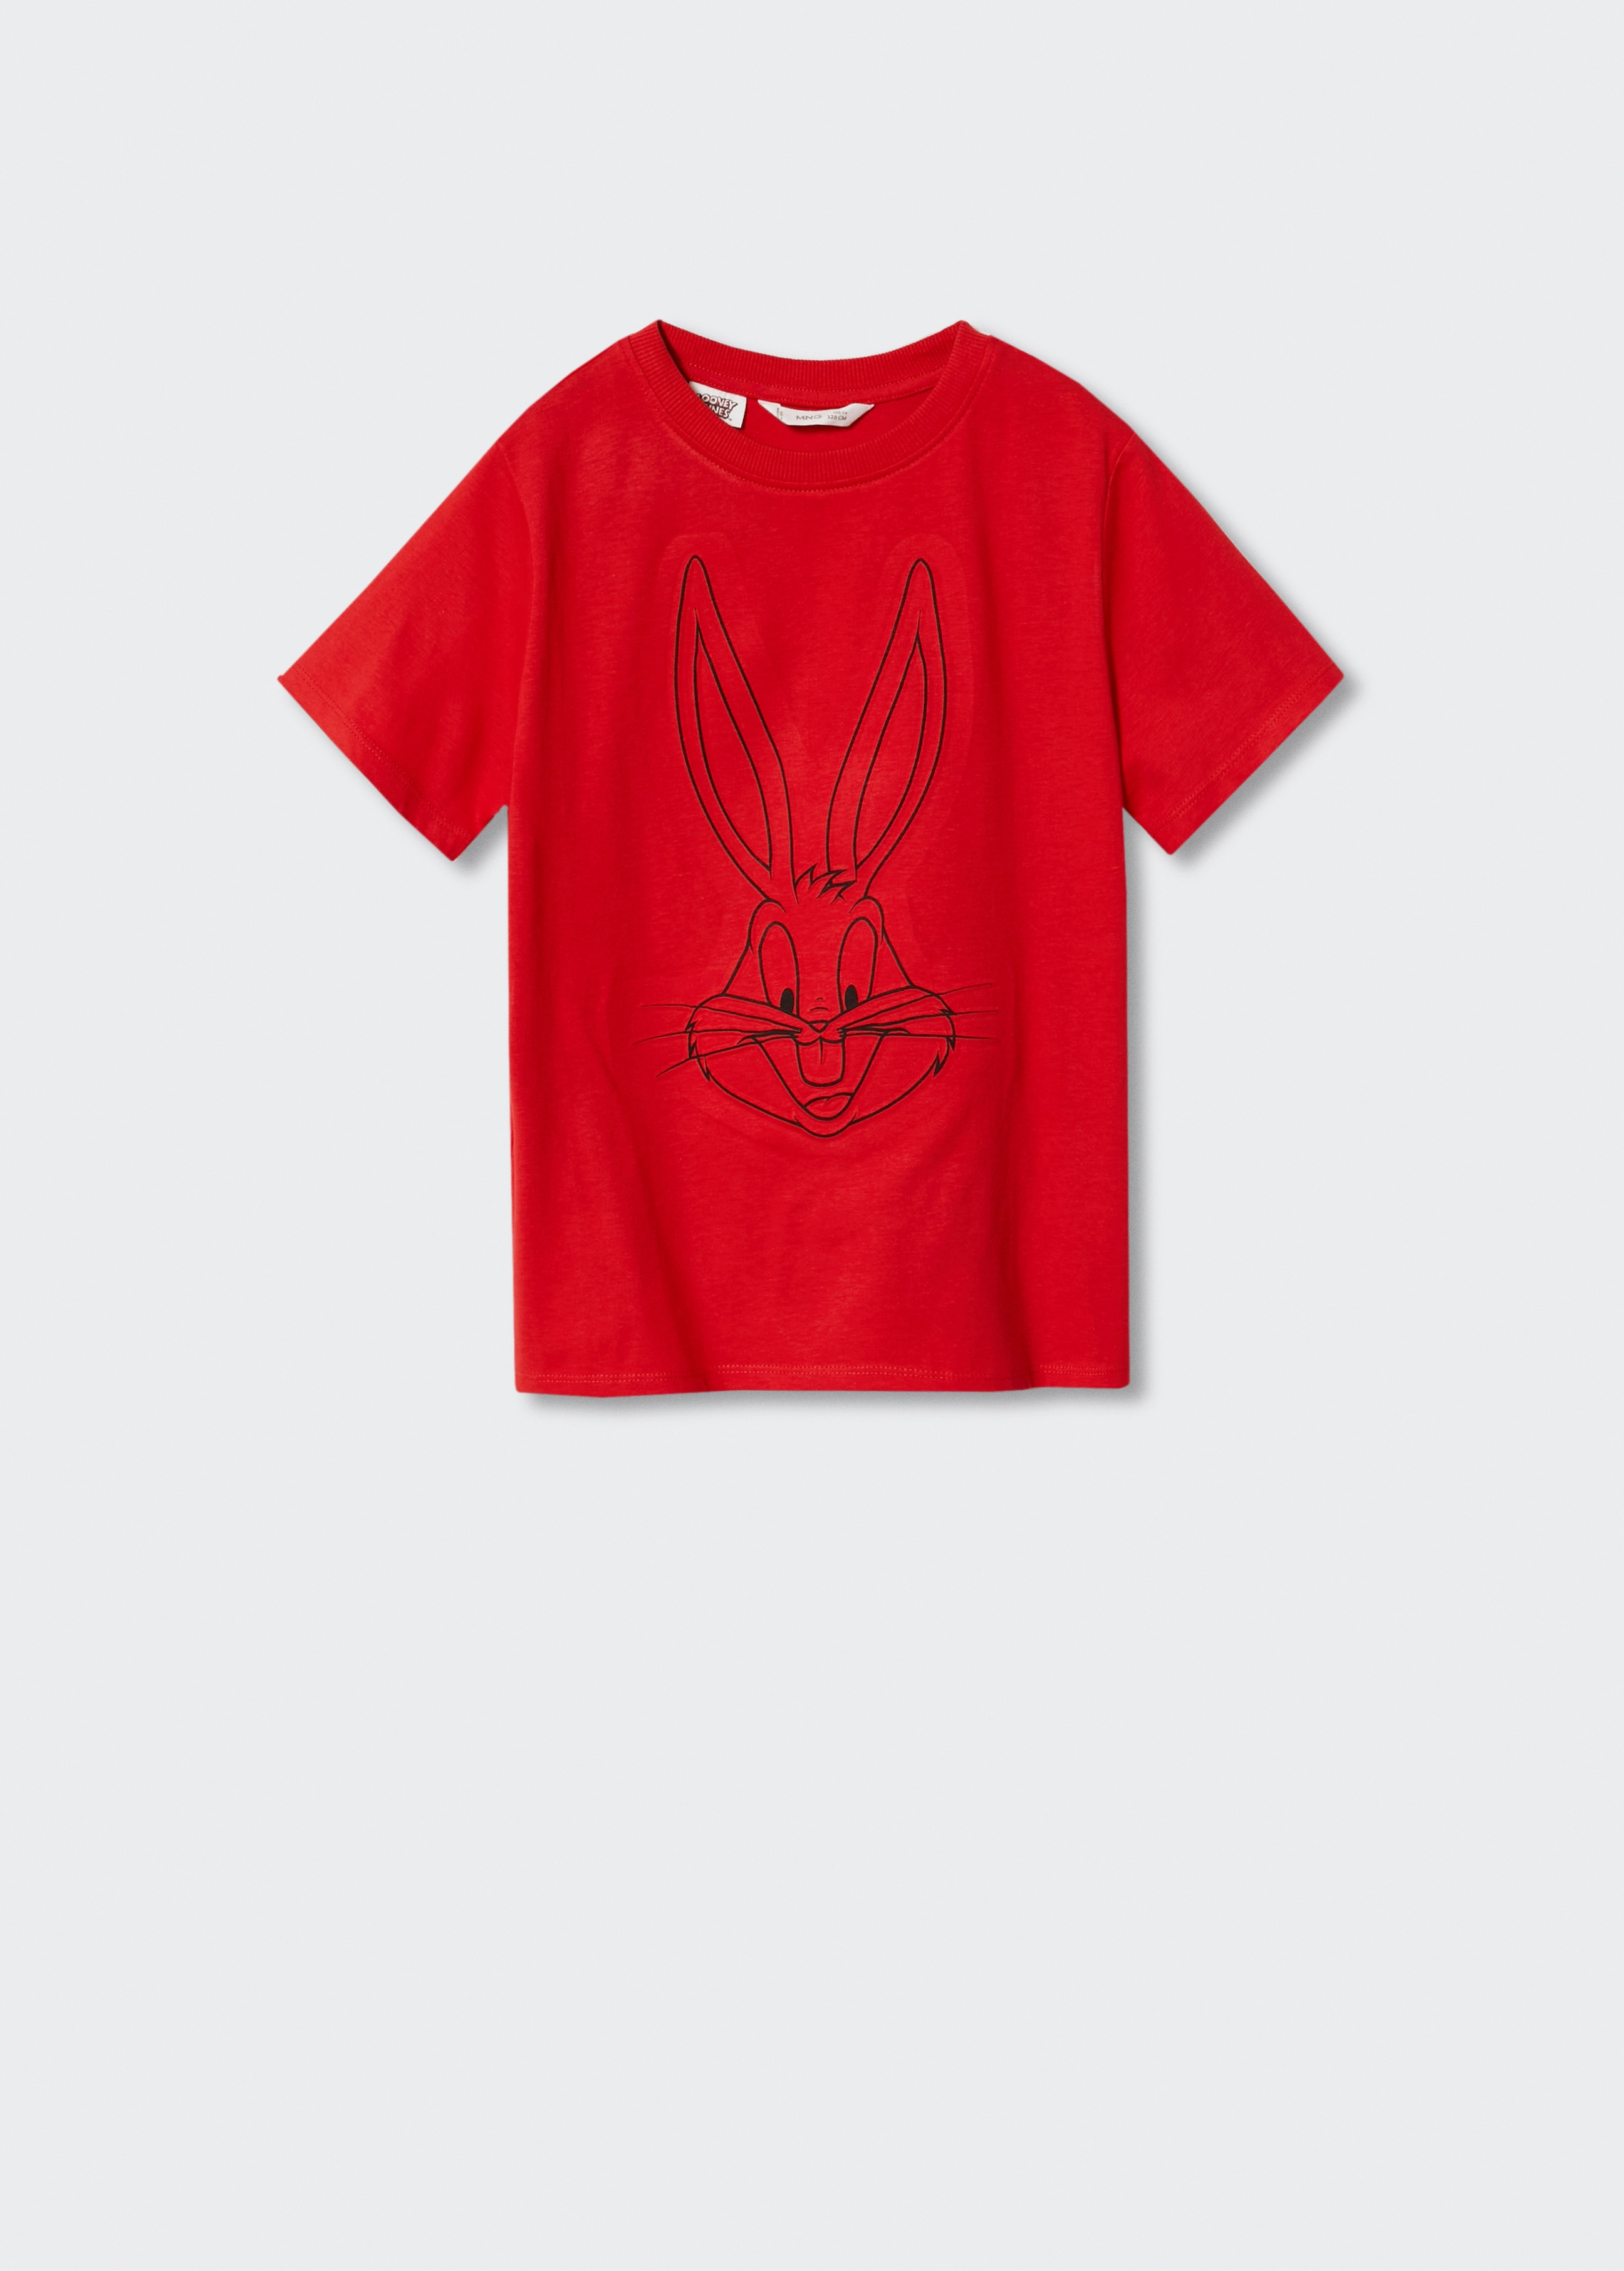 Camiseta Bugs Bunny - Artículo sin modelo